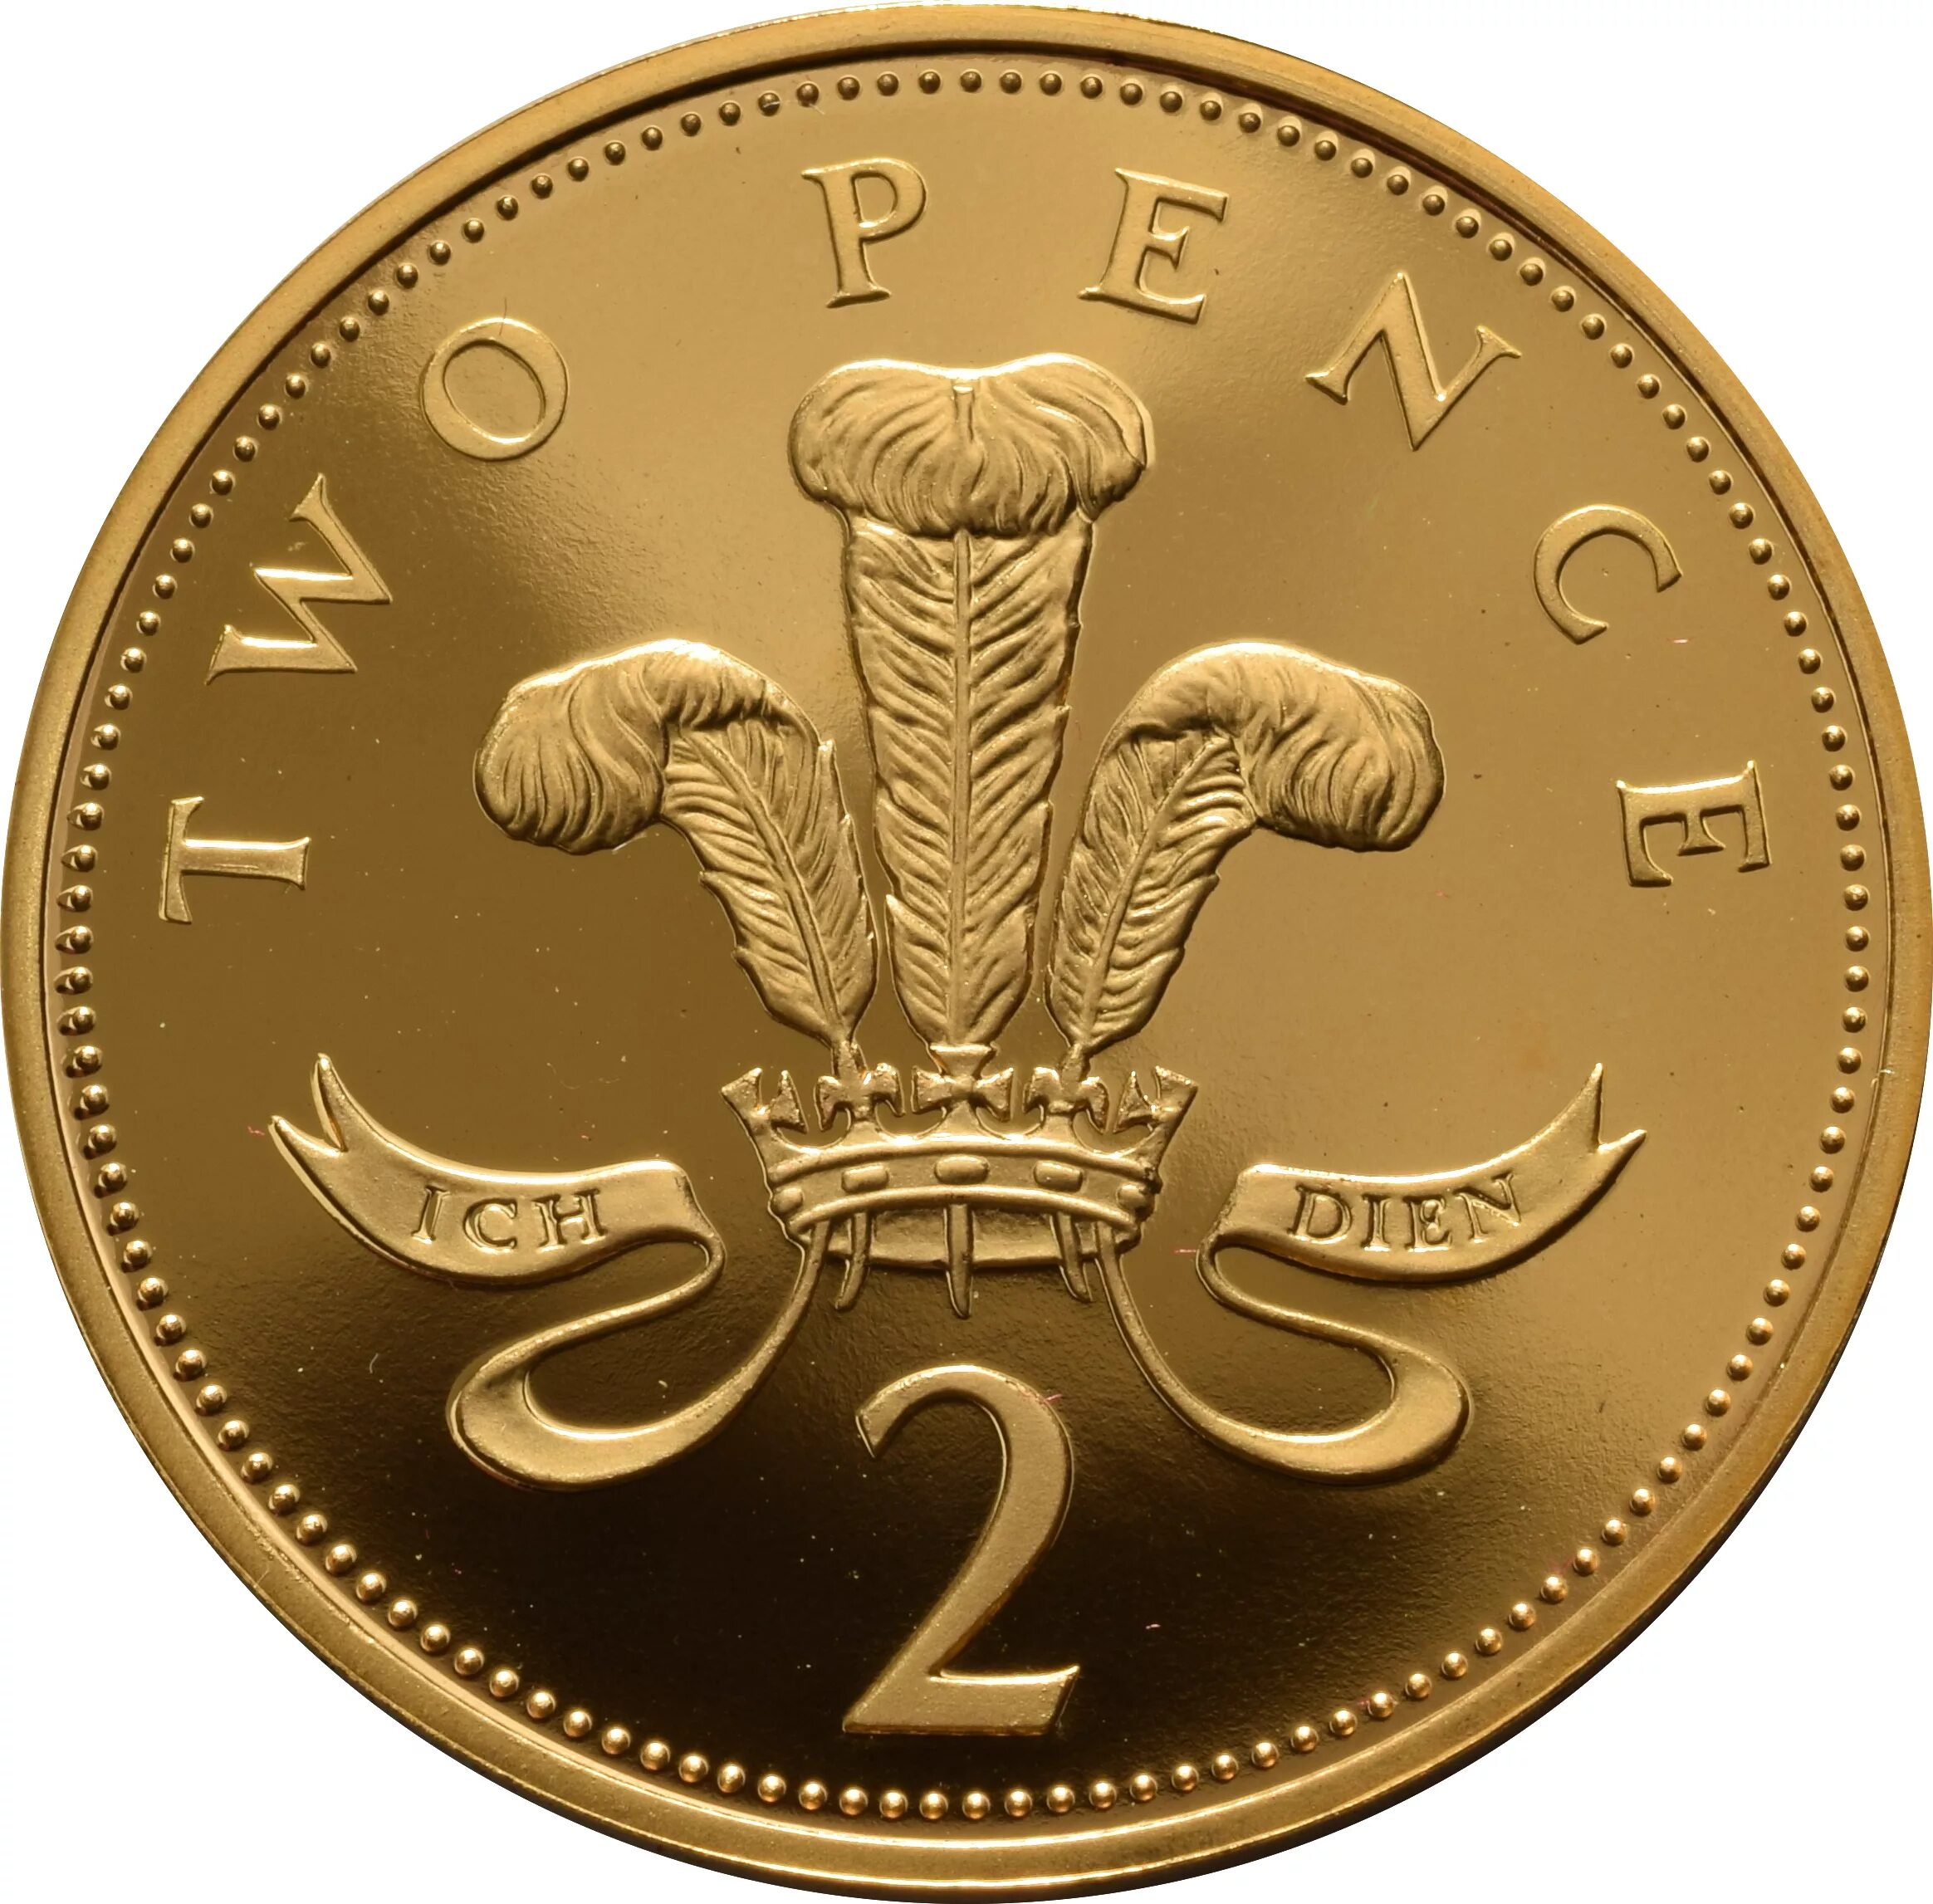 Монета two Pence. 2 Пенса 2008 Великобритания. Два пенса монета Великобритании. Валюта Великобритании пенни. Two coins